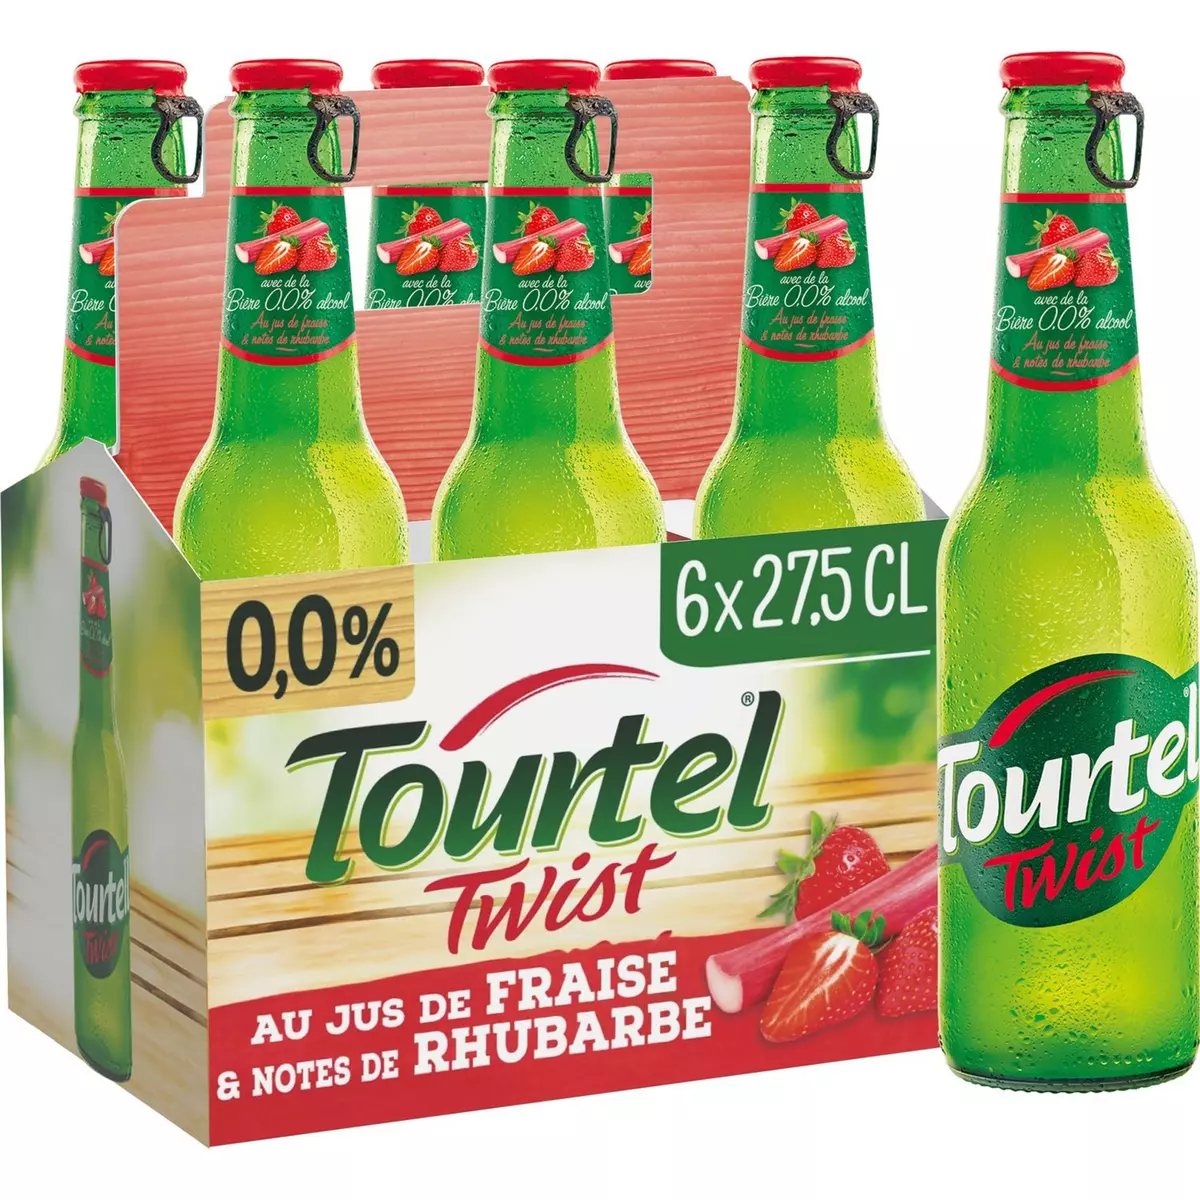 TOURTEL TWIST Bière sans alcool 0.0% au jus de fraise et notes de rhubarbe 6x27.5cl